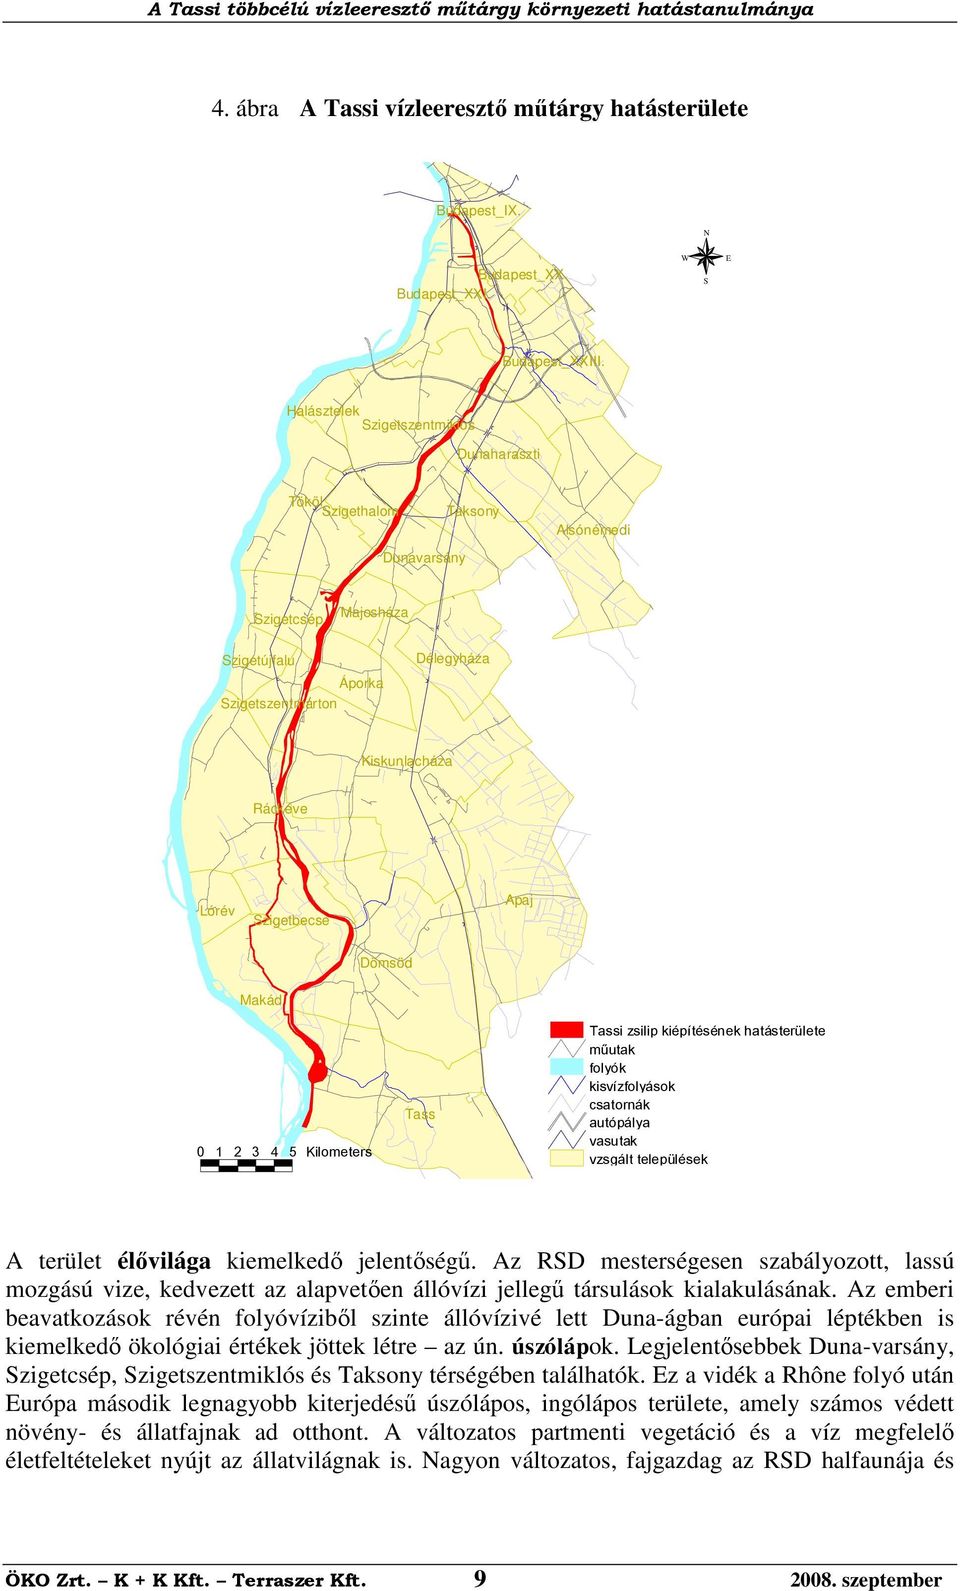 Szigetbecse Dömsöd Makád Tassi zsilip kiépítésének hatásterülete műutak folyók kisvízfolyások csatornák autópálya vasutak vzsgált települések Tass 1 2 3 4 5 Kilometers A terület élővilága kiemelkedő